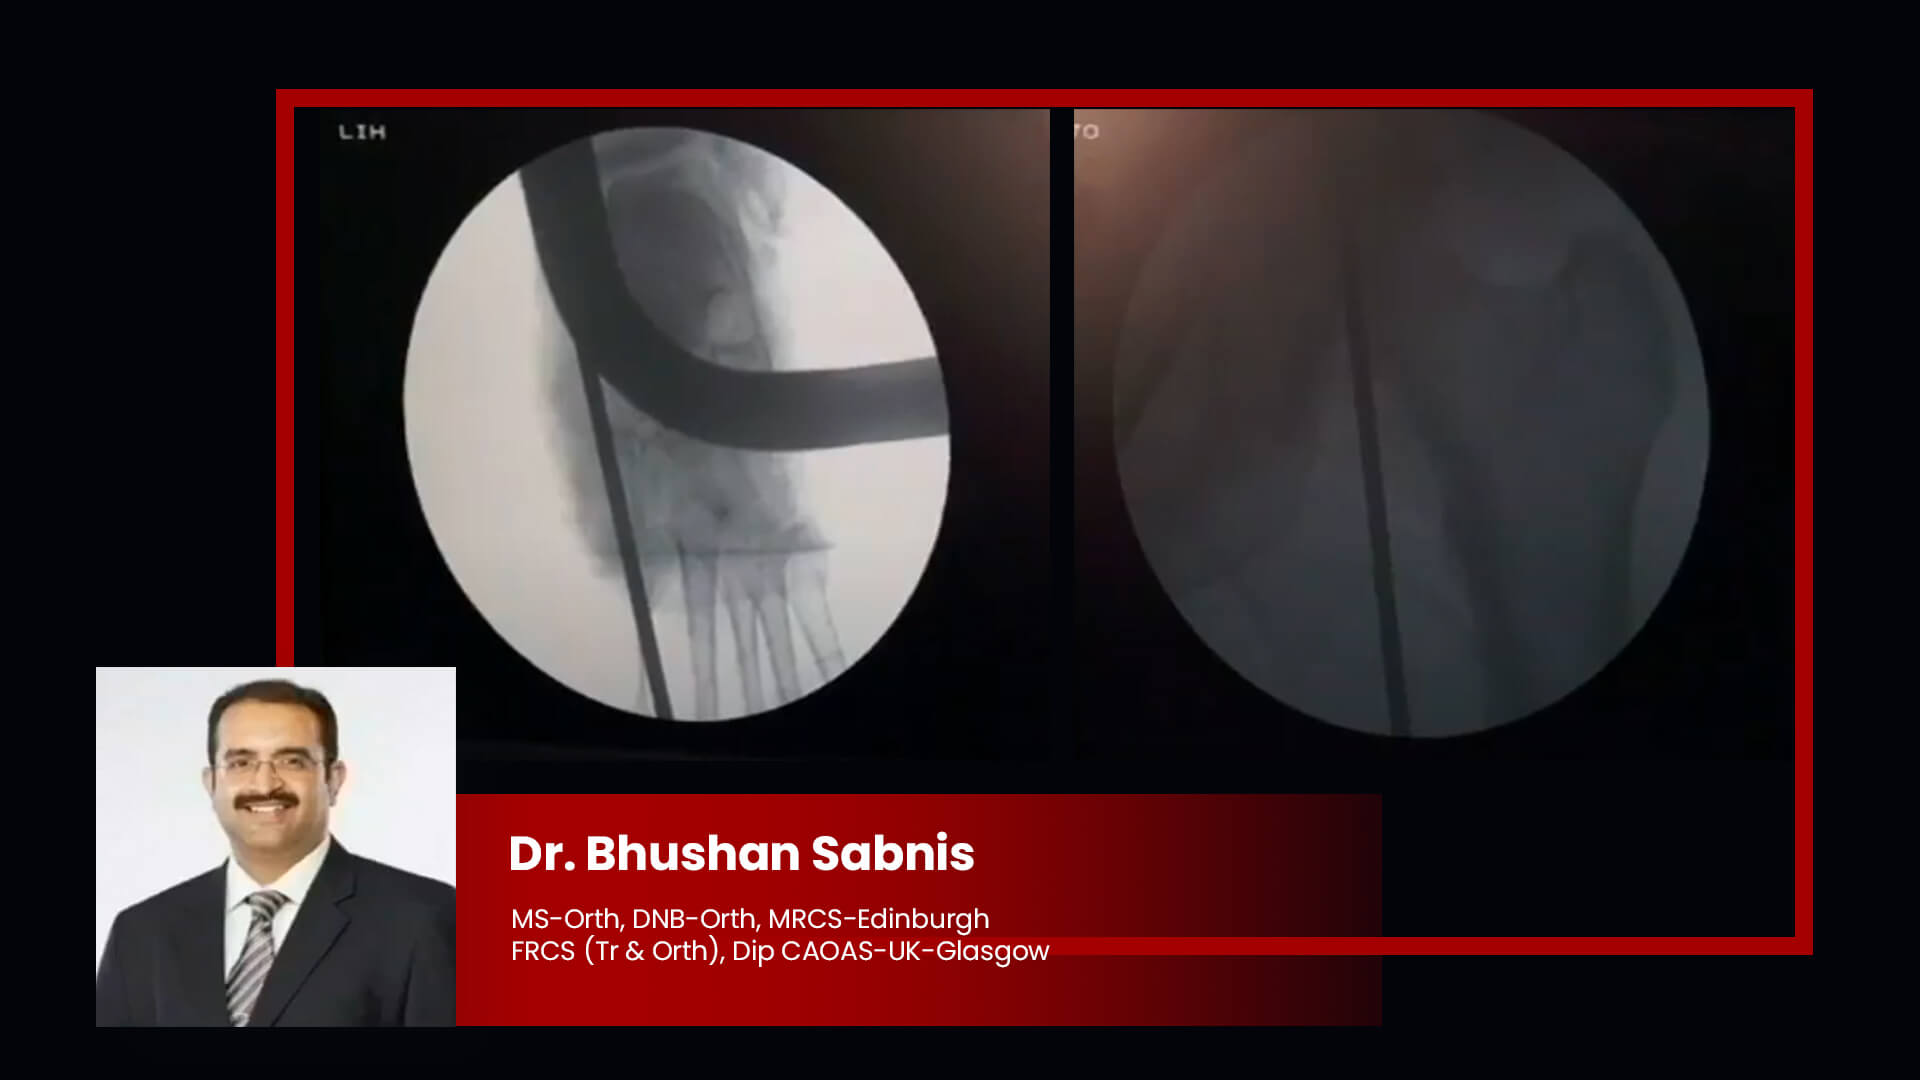 Dr Bhushan Sabnis